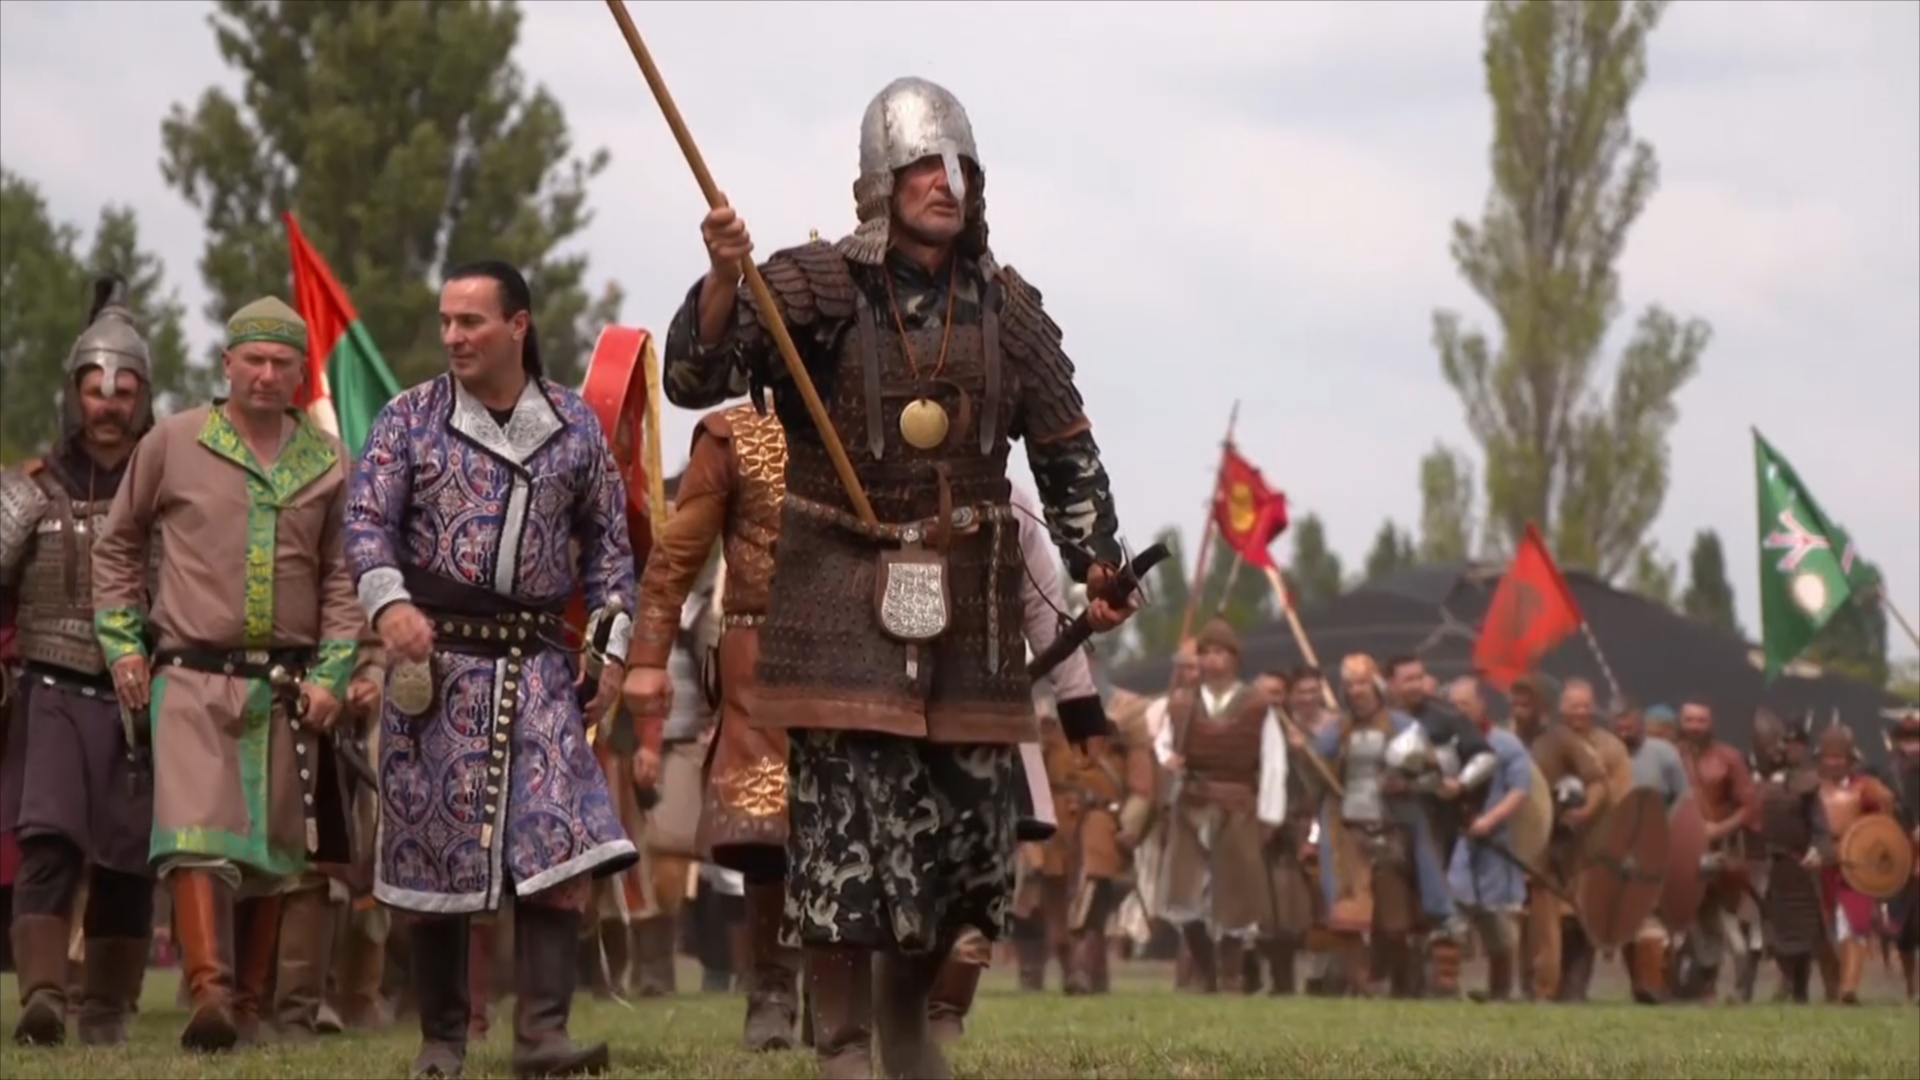 Традиции кочевников оживают на фестивале «Курултай» в Венгрии